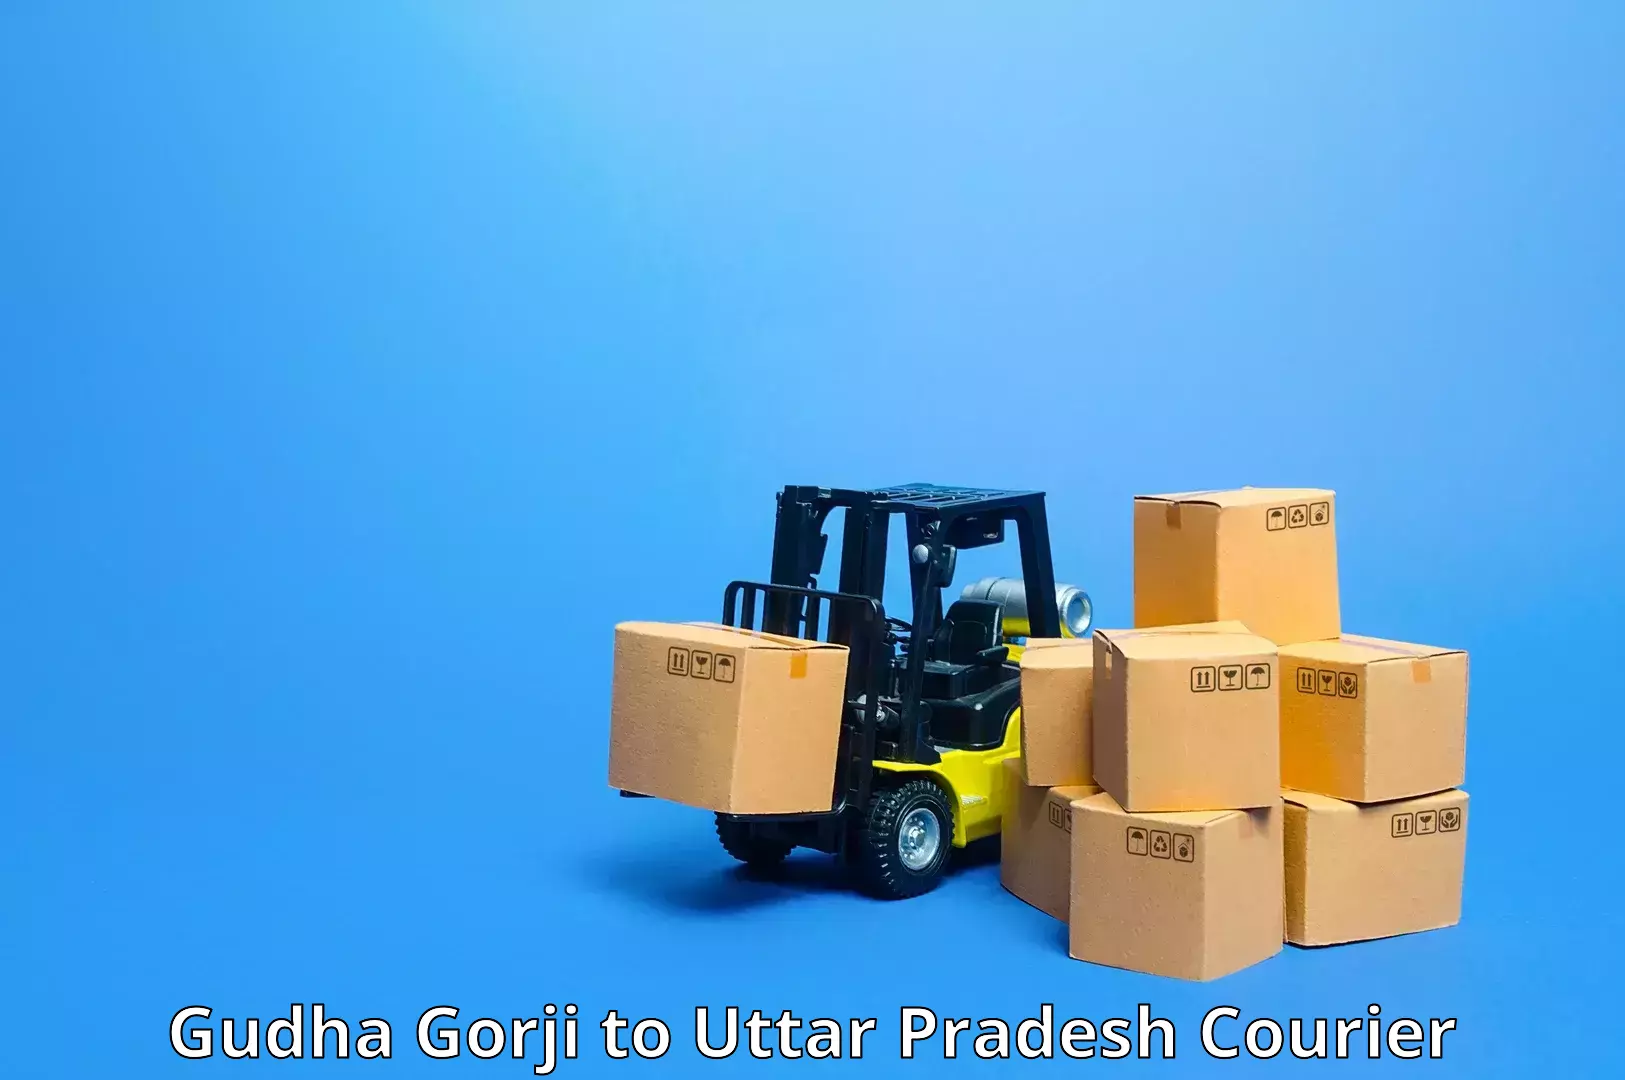 24/7 shipping services Gudha Gorji to Manda